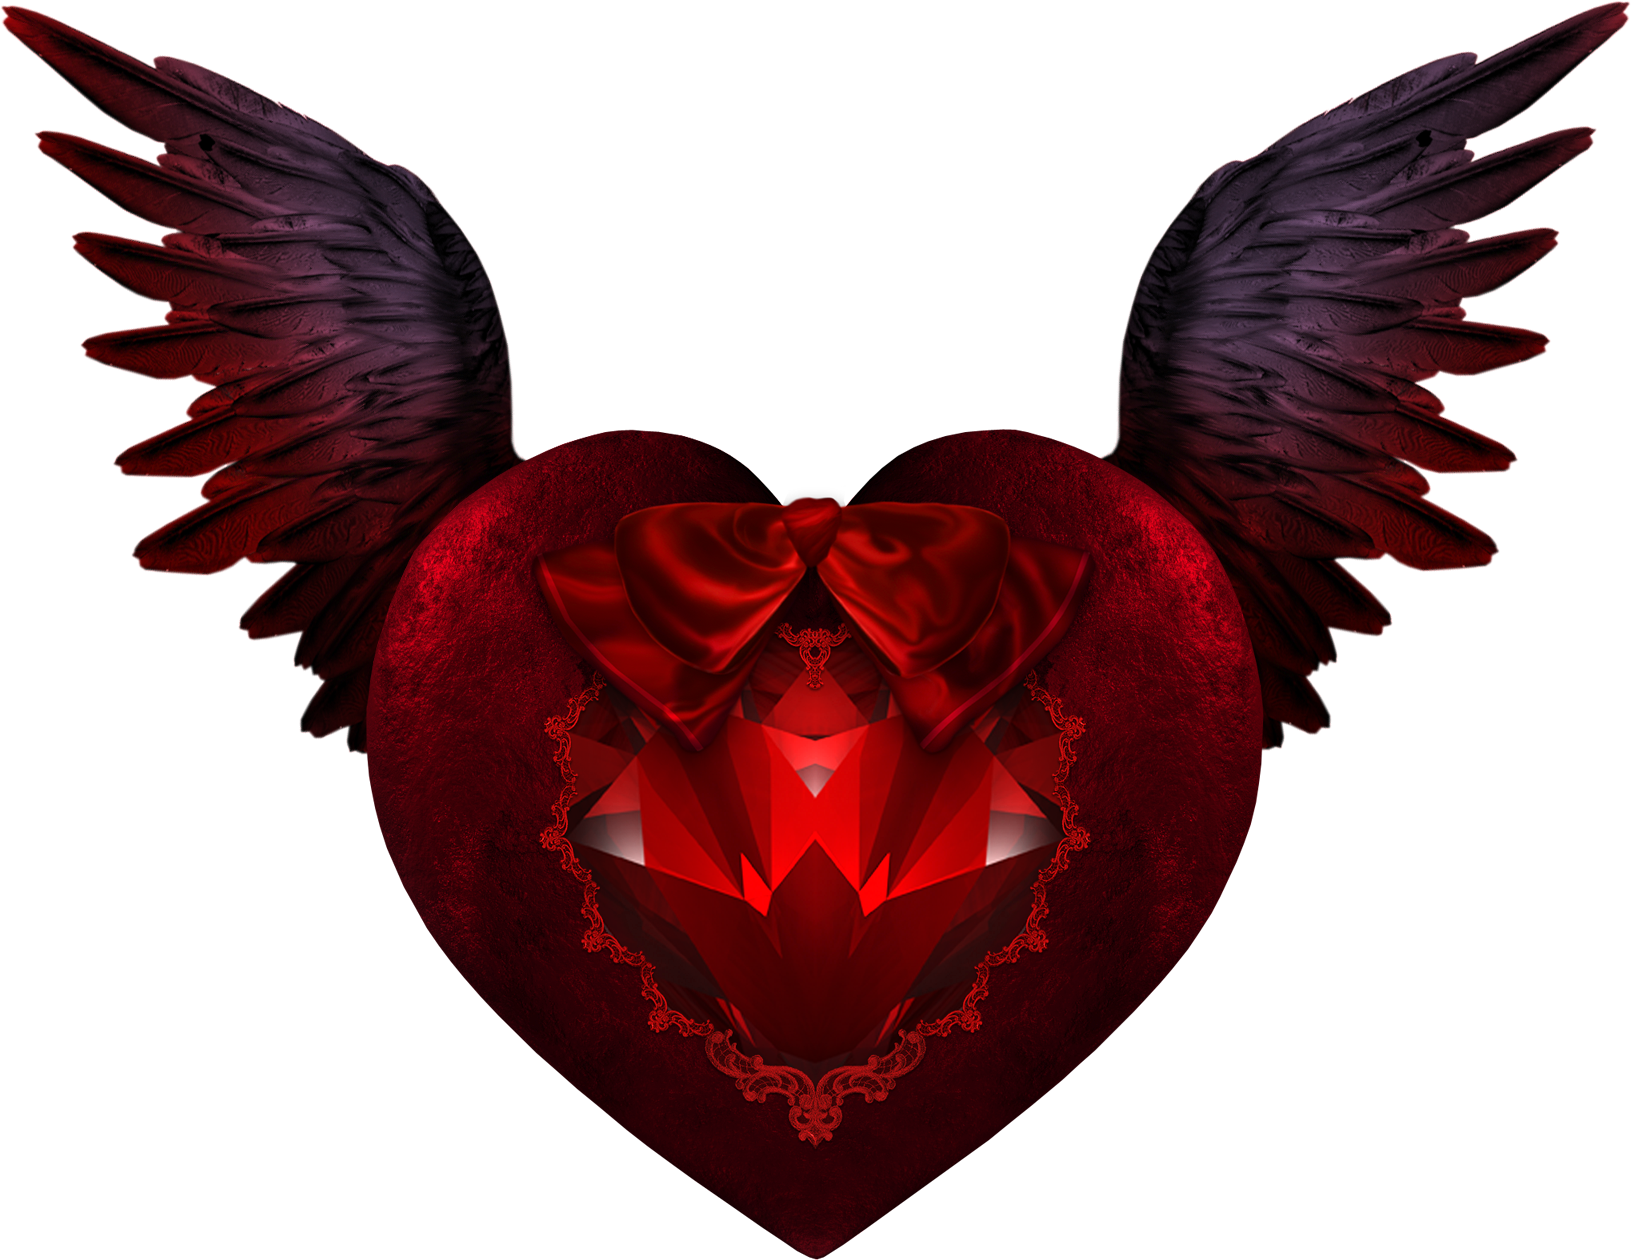 Devil Wing Heart - Devil Heart With Wings (1631x1260)